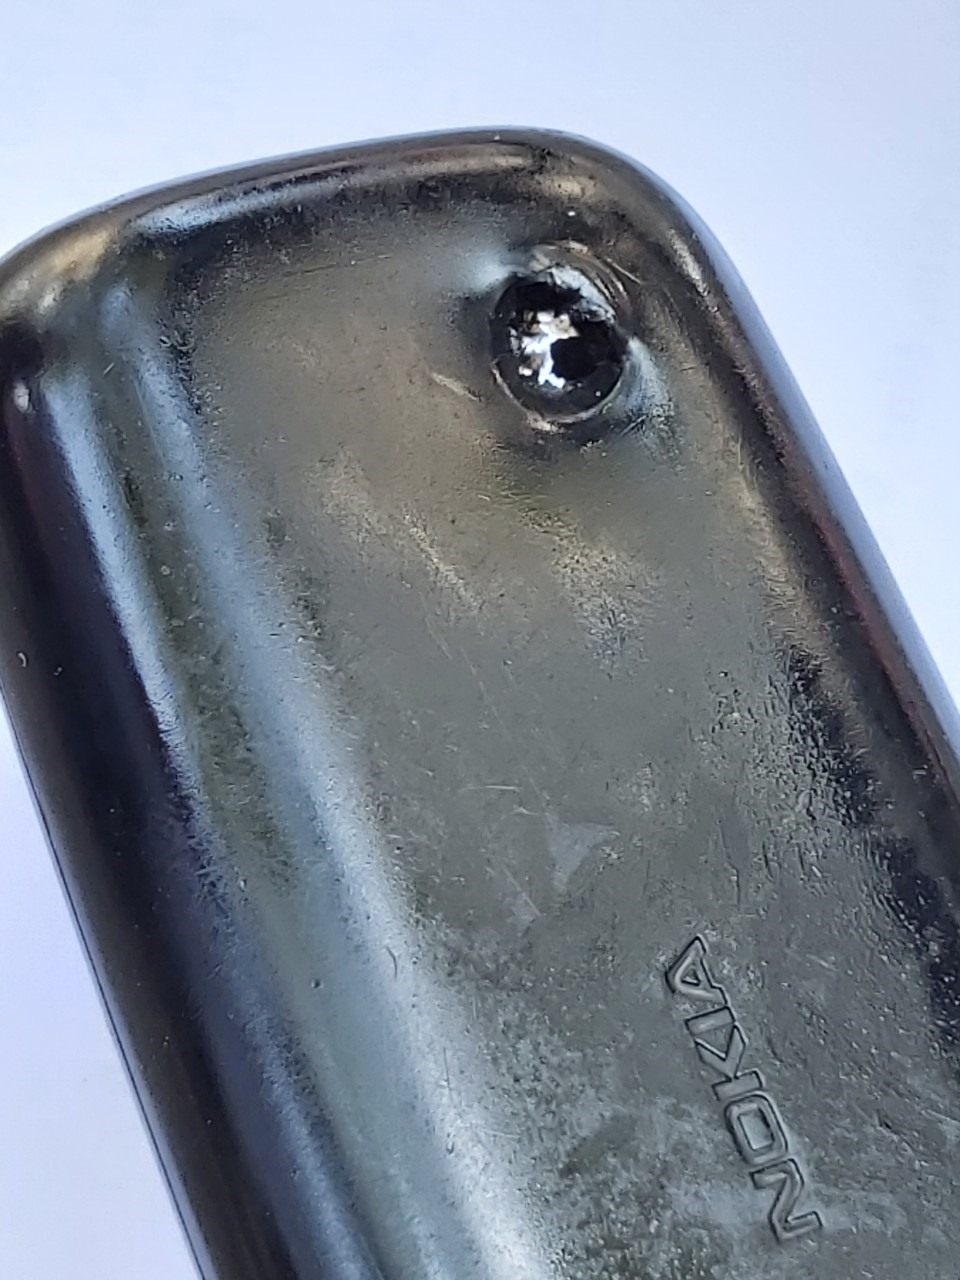 Chiếc điện thoại của anh Tâm có một lỗ thủng ở góc trên giống như vết đạn bắn xuyên qua. Ảnh Nam Dương.